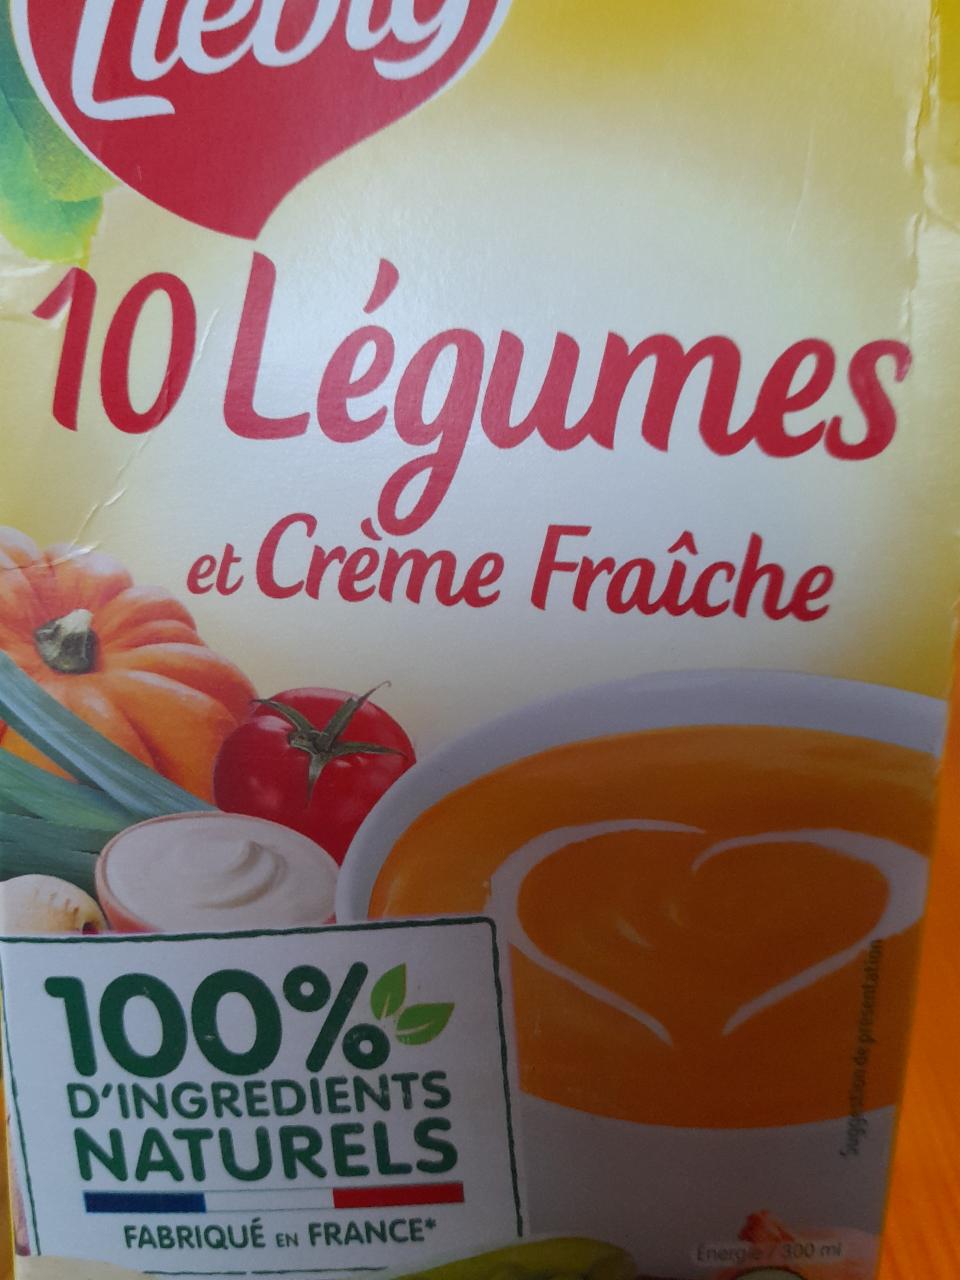 Fotografie - Liebig 10 Légumes et Creme Fraiche